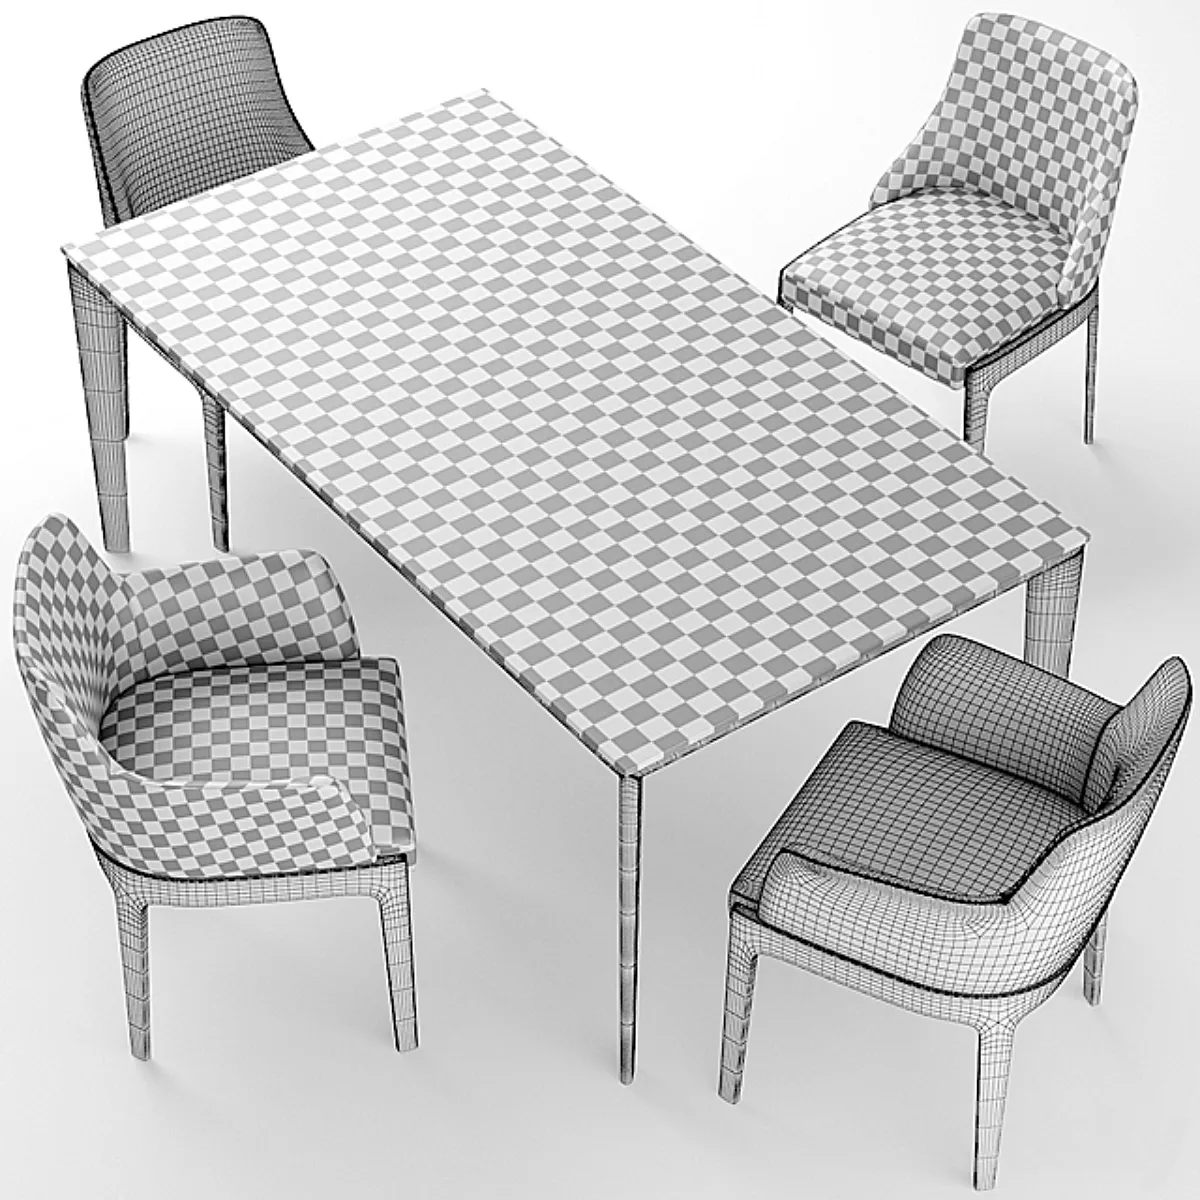 دانلود مدل سه بعدی میز ناهار خوری مدرن 26 - 6